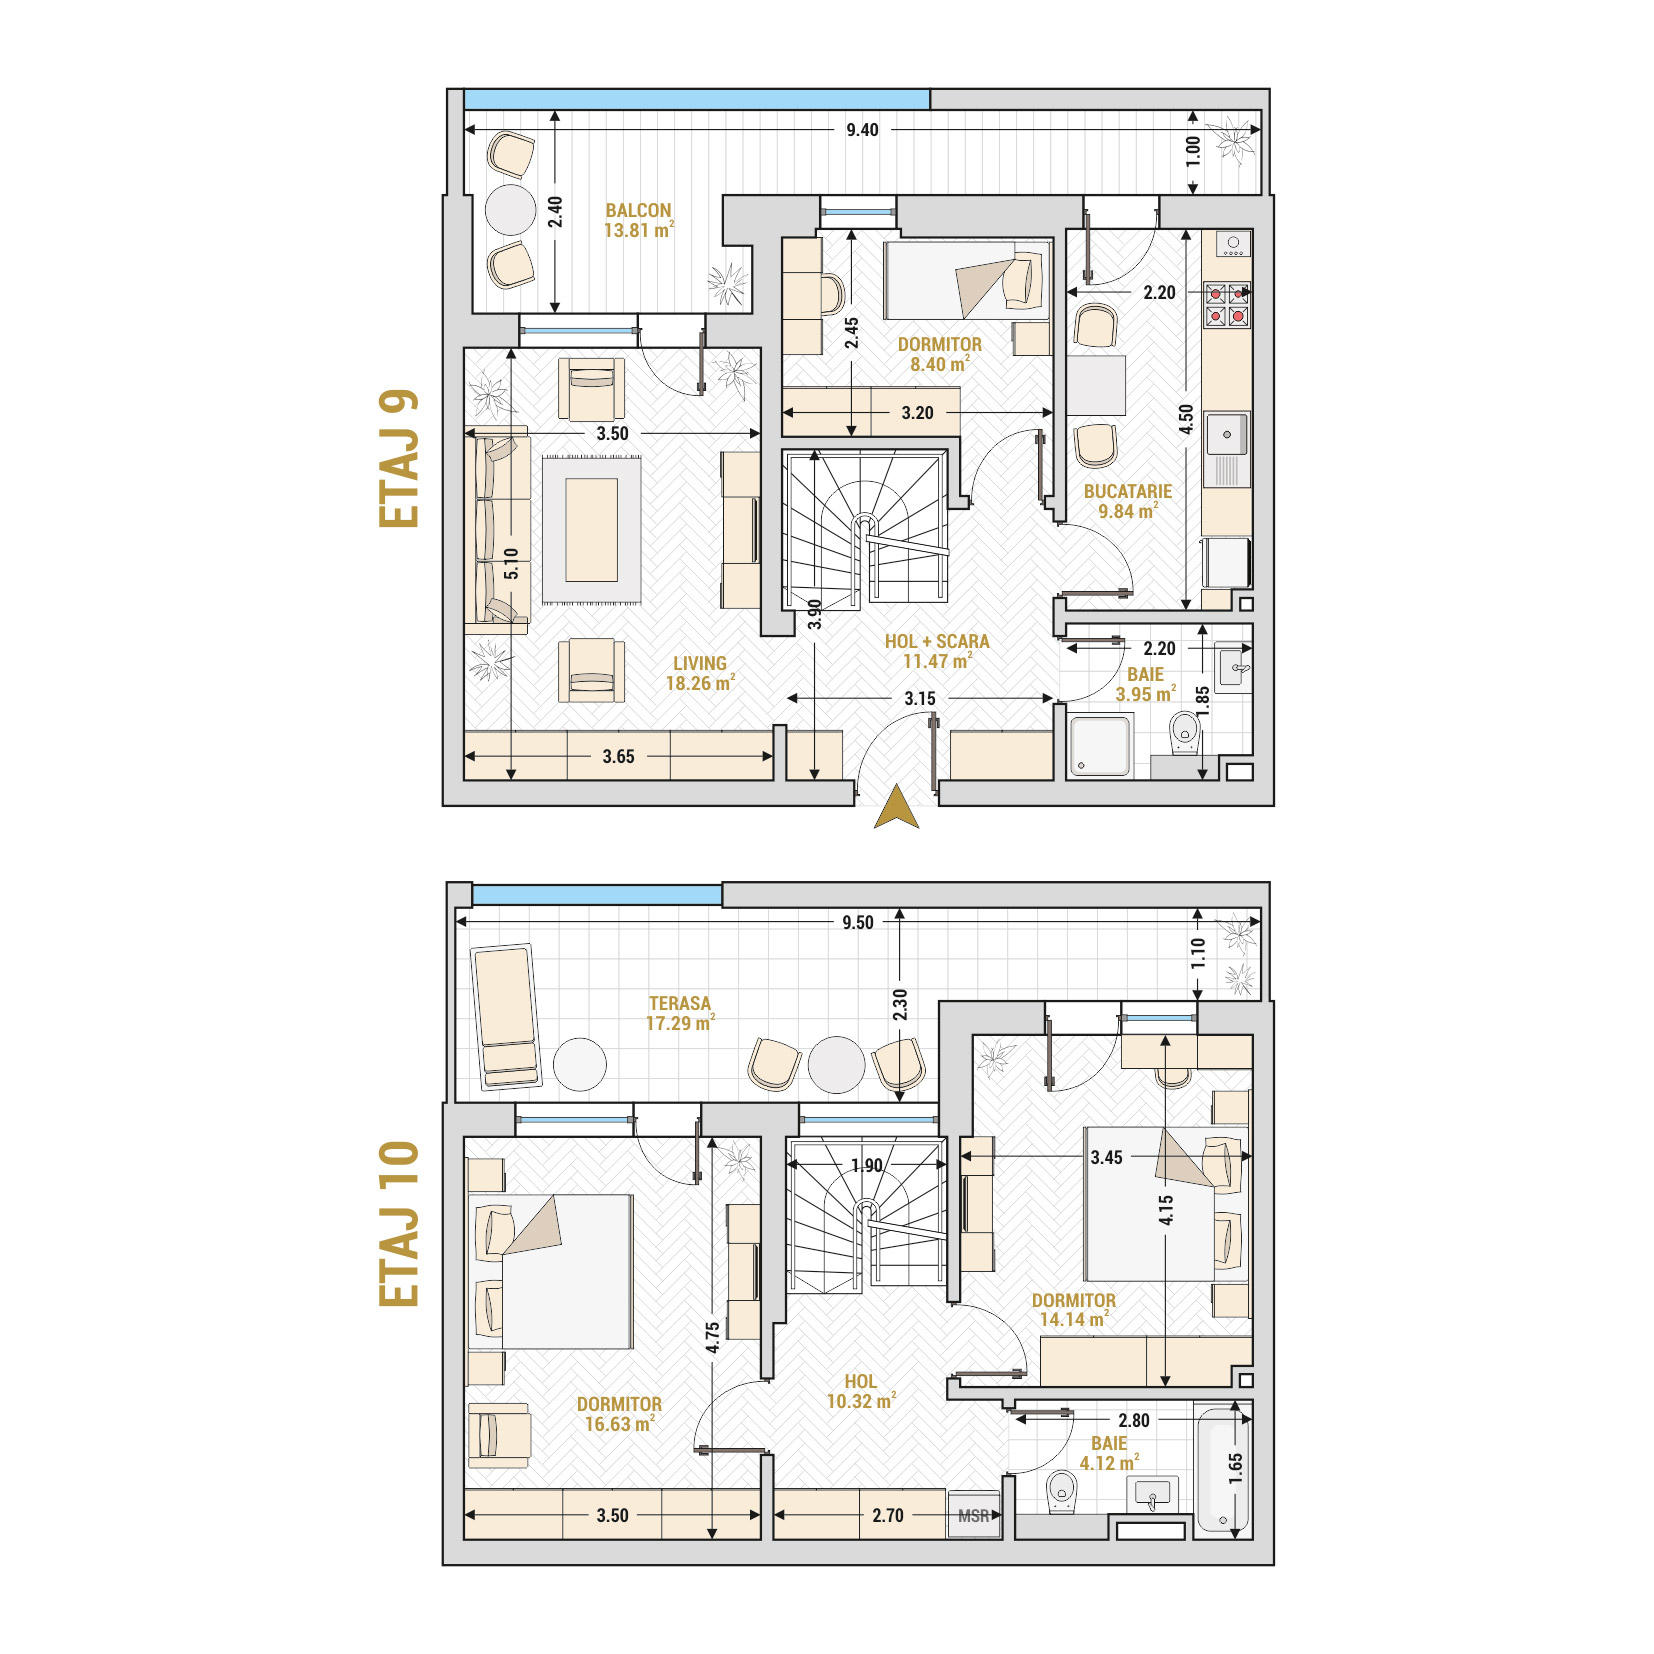 Penthouse 4 Camere Tip 2 Corp 2 - Drumul Taberei Residence - Apartamente de vanzare Bucuresti - Suprafata utila totala - 128.23 mp